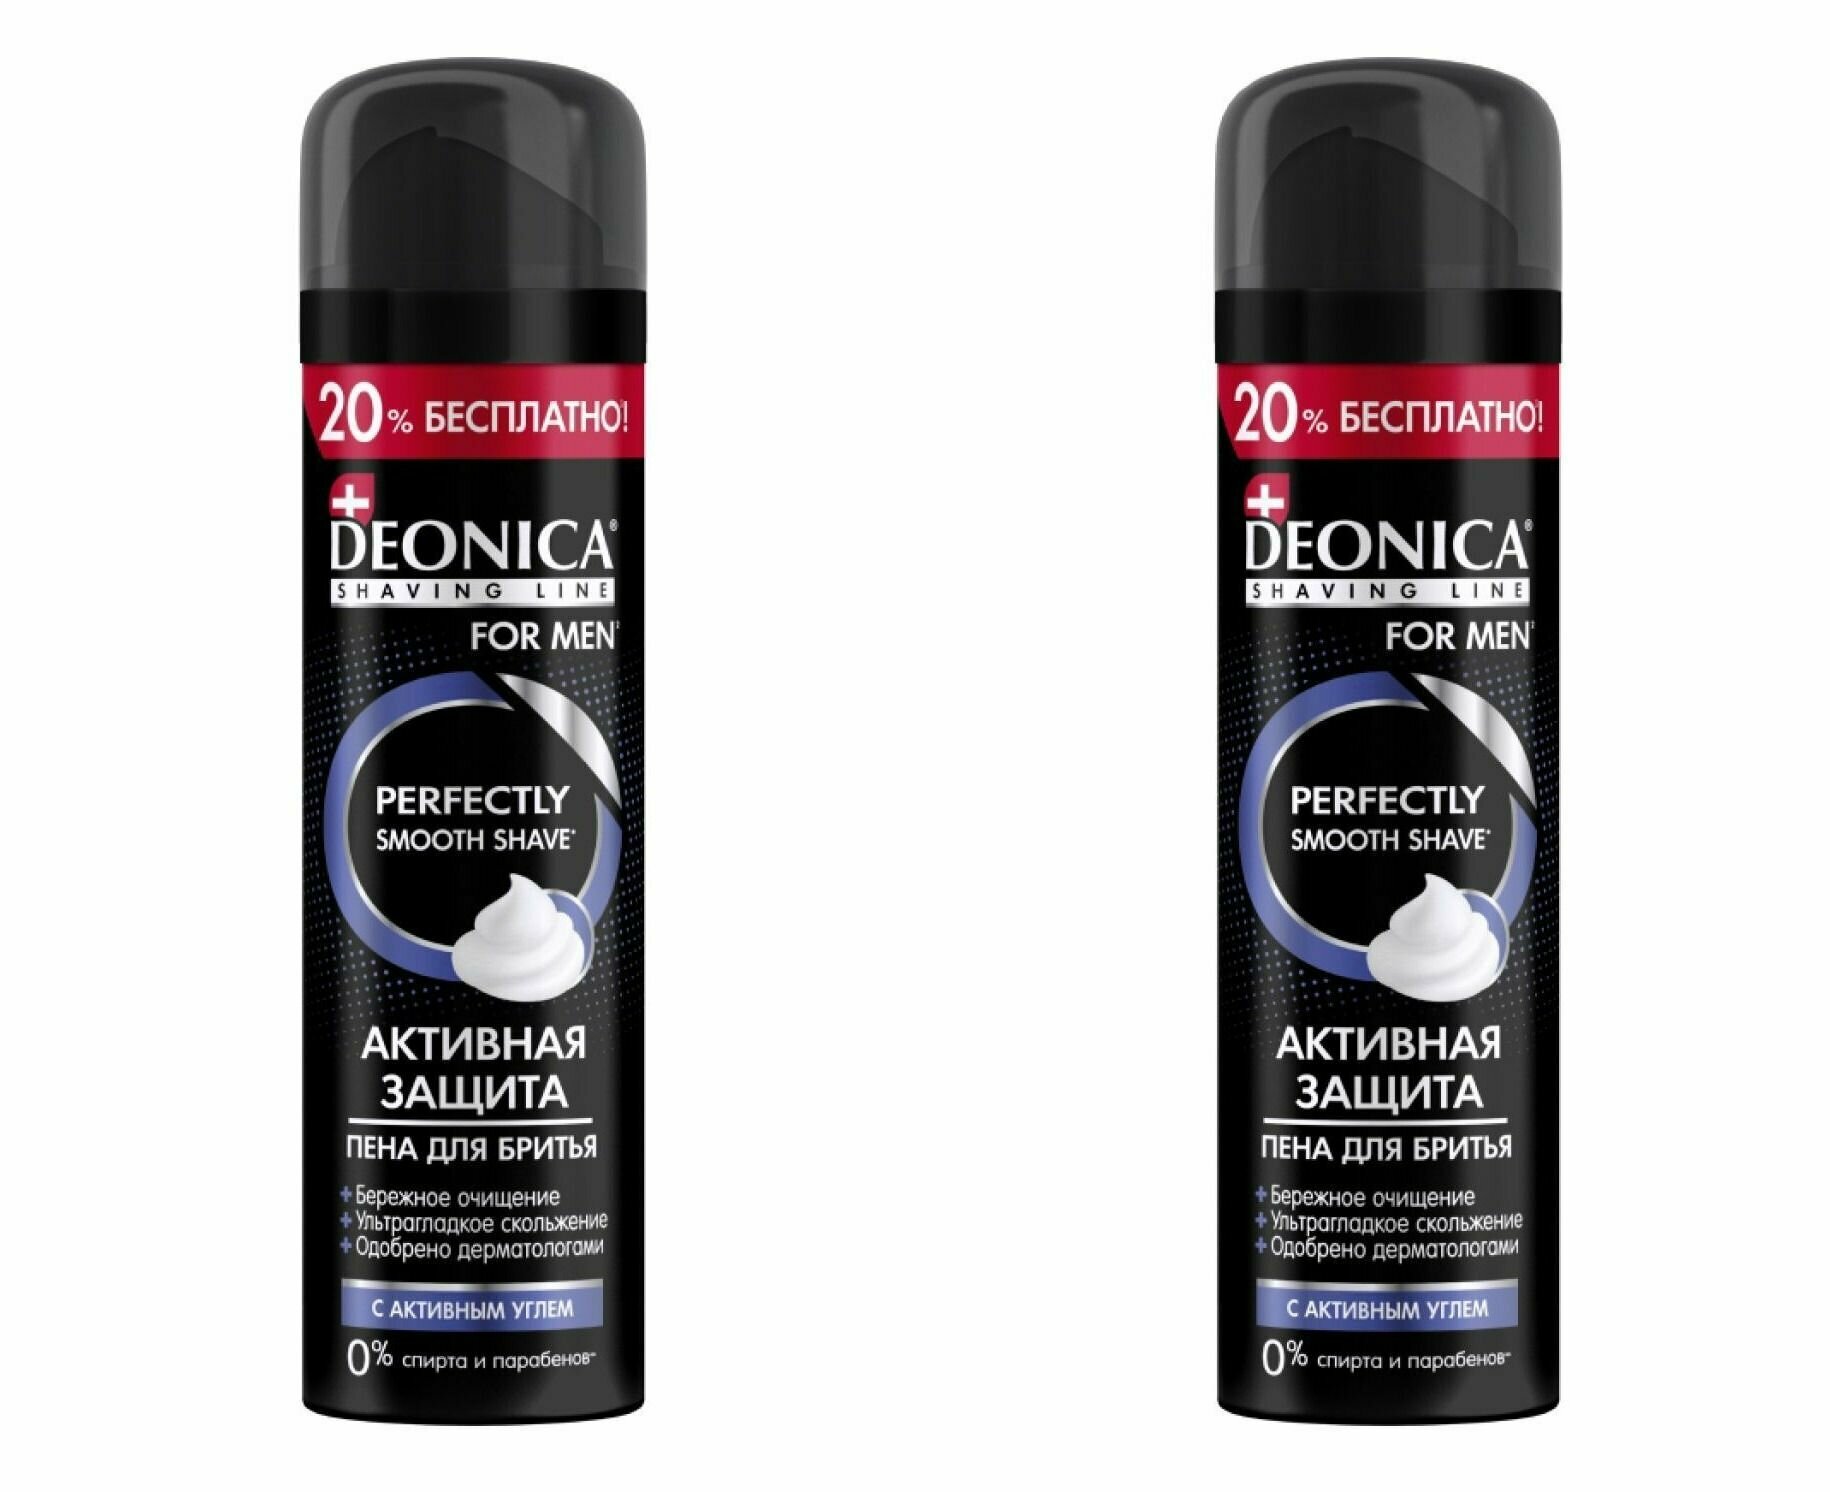 Пена для бритья Deonica For Men Активная защита с черным углём, 240 мл - фото №1